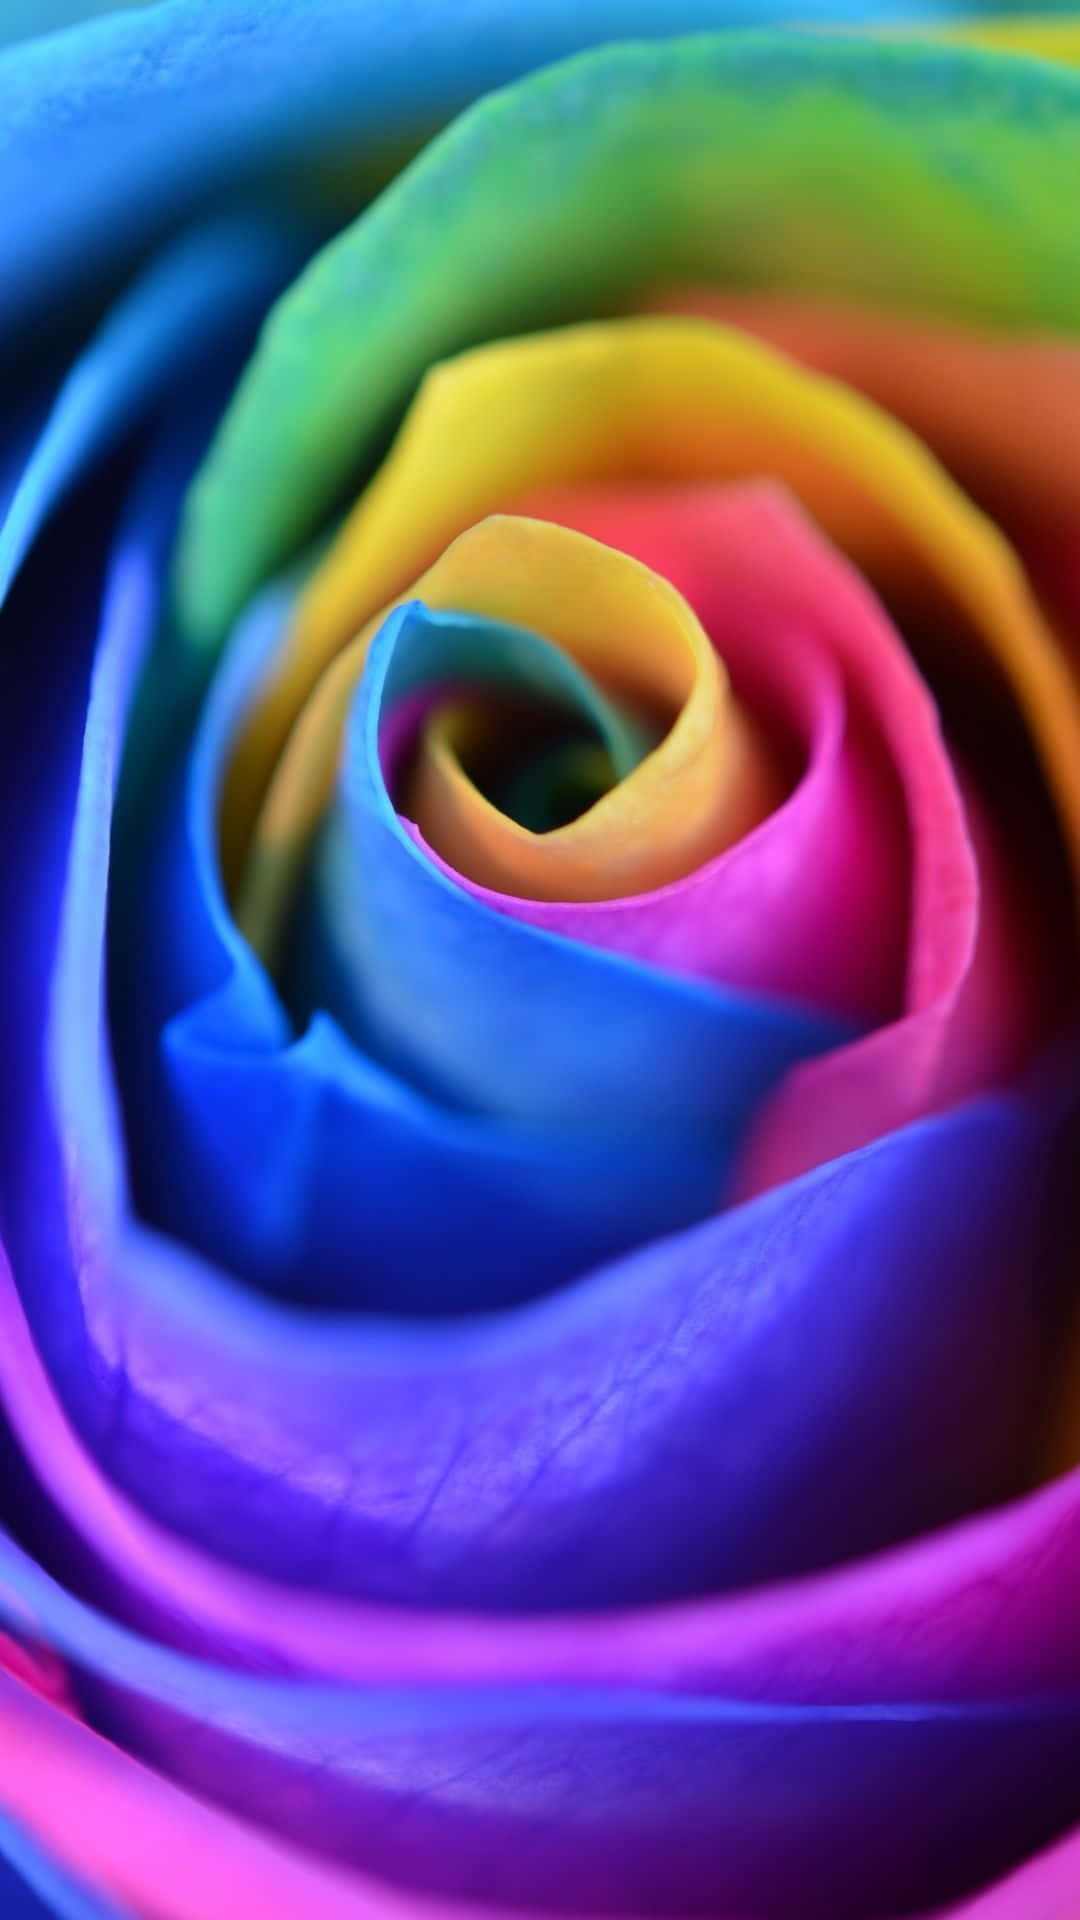 Aggiungiuna Spruzzata Di Colore Al Tuo Smartphone Con Questa Carta Da Parati Iphone Rainbow Flower! Sfondo